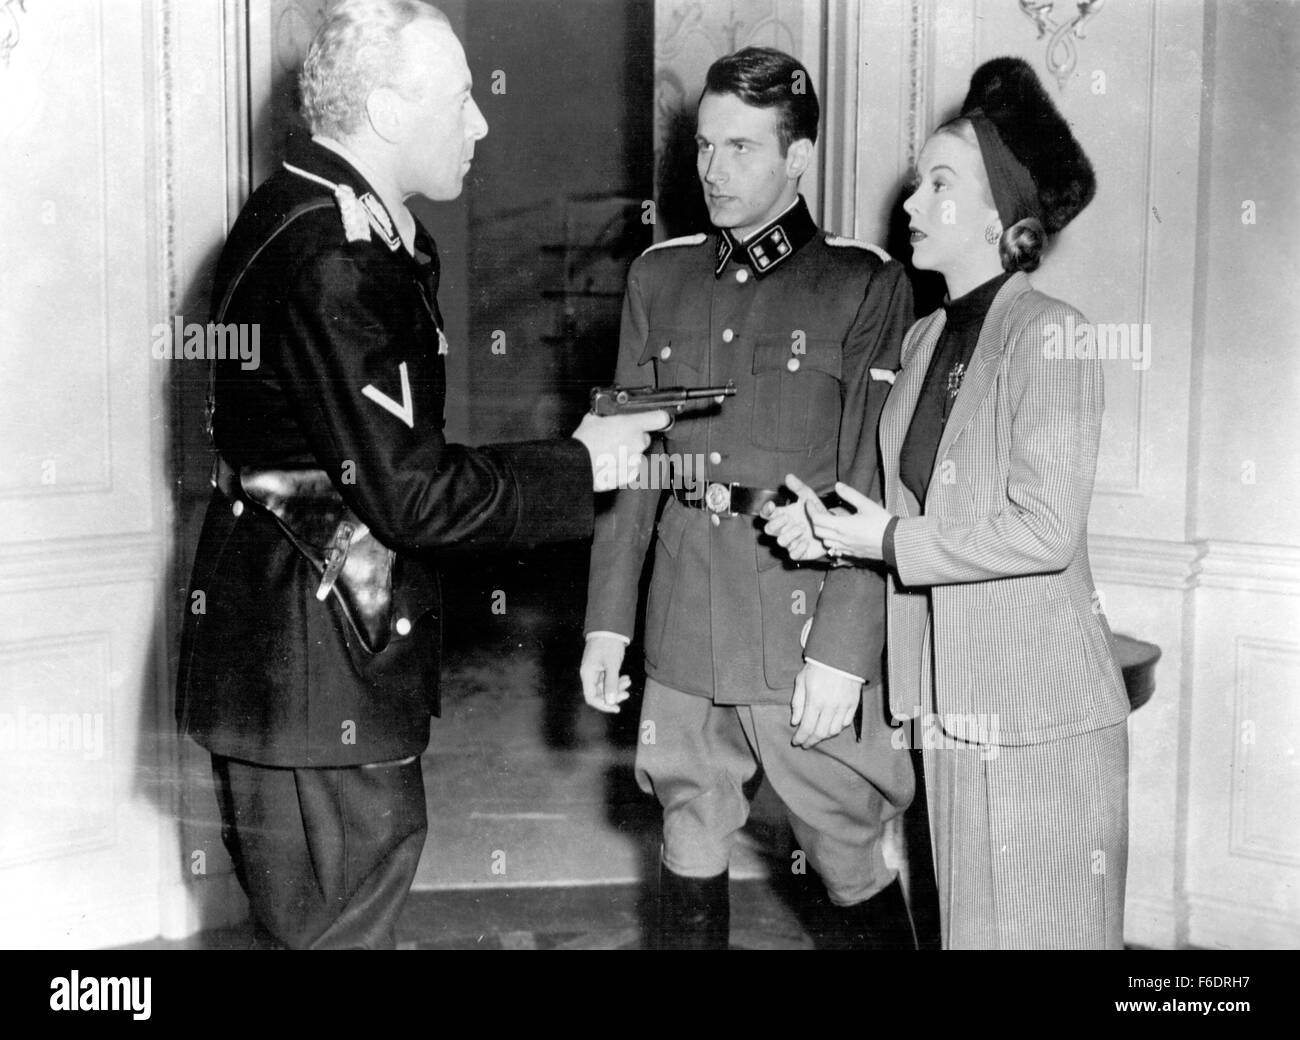 DATE DE SORTIE : 2 mars 1945. Titre du film : Hotel Berlin. STUDIO : Warner Bros Pictures. Résumé : Près de la fin de la SECONDE GUERRE MONDIALE, un membre de l'underground allemand (Martin Richter) s'échappe de la Gestapo et se réfugie à l'Hôtel Berlin, où il rencontre Lisa Dorn, une actrice élégante impliqués avec le général von Dahnwitz, qui est également en train d'essayer de quitter l'Allemagne. L'hôtel est un foyer de Nazis, les réfugiés, les espions et les Allemands tentent de survivre défaite inévitable sans devenir trop impliqué. Sur la photo : Raymond MASSEY comme Arnim von Dahnwitz et ANDREA KING comme Lisa Dorn. Banque D'Images